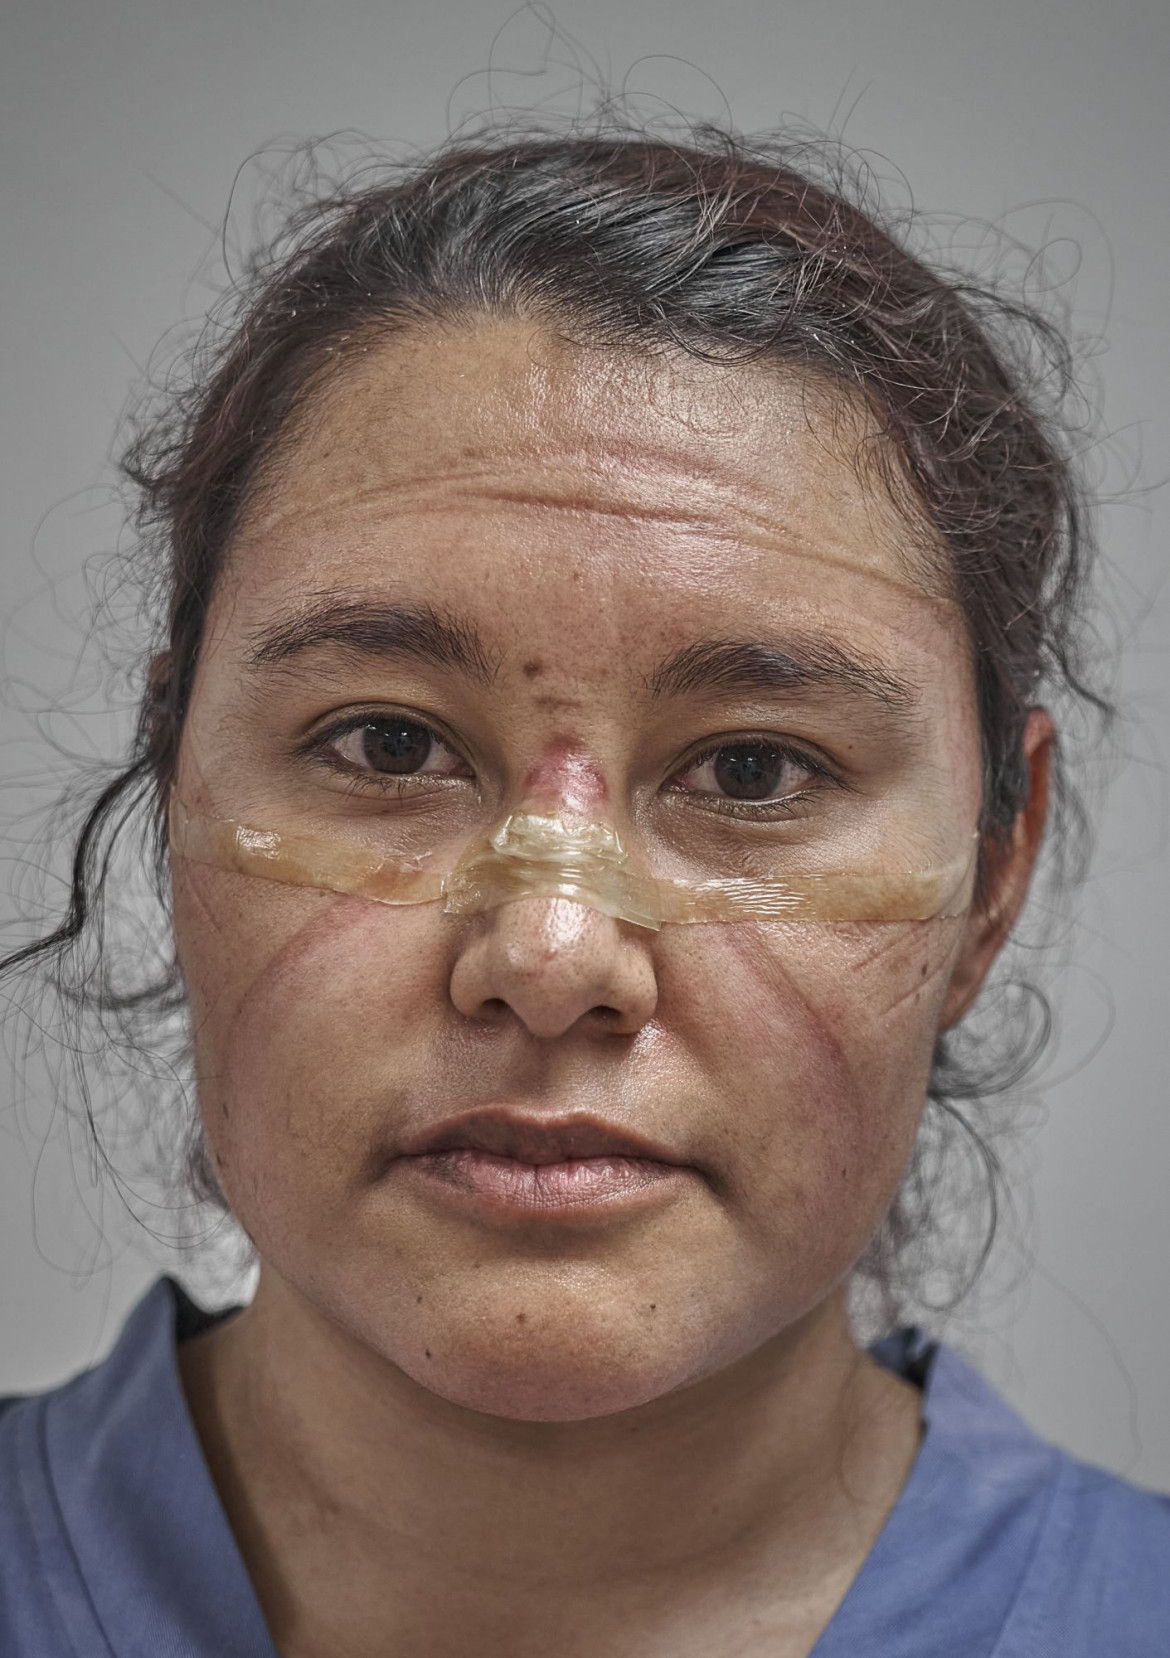 fot. Iván Macías, Meksyk, "COVID-19 First Responder", 2 miejsce w kategorii "Portret - zdjęcie pojedyncze" / World Press Photo 2021<br></br><br></br>Lekarz pod koniec swojej zmiany w czasie pandemi. ślady pozostawione przez maskę ochronną i gogle są wyraźnie widoczne na jej twarzy, Meksyk, 19 maja 2021 r.<br></br><br></br>Pracownicy służby zdrowia na całym świecie stanęli na czele walki z nowym koronawirusem, COVID-19, który powstał w Chinach i szybko rozprzestrzenił się na cały świat. Spośród 37 krajów przebadanych przez Forbes w listopadzie 2020 roku, Meksyk zgłosił 78200 zakażeń COVID wśród pracowników służby zdrowia. Po uwzględnieniu wielkości populacji był to najwyższy wskaźnik na świecie.<br></br><br></br>Pierwsze przypadki COVID-19 w Meksyku potwierdzono pod koniec lutego. W marcu prezydent López Obrador zmniejszył stopień zagrożenia ze strony wirusa, umożliwiając kontynuowanie dużych zgromadzeń publicznych i przygotowań do sezonu turystycznego. Gdy liczba przypadków zaczęła rosnąć, pod koniec marca weszła w życie blokada, ale w kwietniu prezydent ogłosił, że wirus jest pod kontrolą.<br></br><br></br>13 maja, mniej niż 24 godziny po tym, jak kraj ogłosił swój najbardziej śmiertelny dzień podczas pandemii (353 zgony), Obrador zalecił złagodzenie środków blokujących. Meksyk znalazł się również pod presją Stanów Zjednoczonych, aby ponownie otworzyć swoją gospodarkę w celu zapewnienia kontynentalnych łańcuchów dostaw. Wyczerpani pracownicy służby zdrowia stawali się coraz bardziej krytyczni wobec polityków, którzy nie wymuszali surowszych przepisów przeciw COVID.